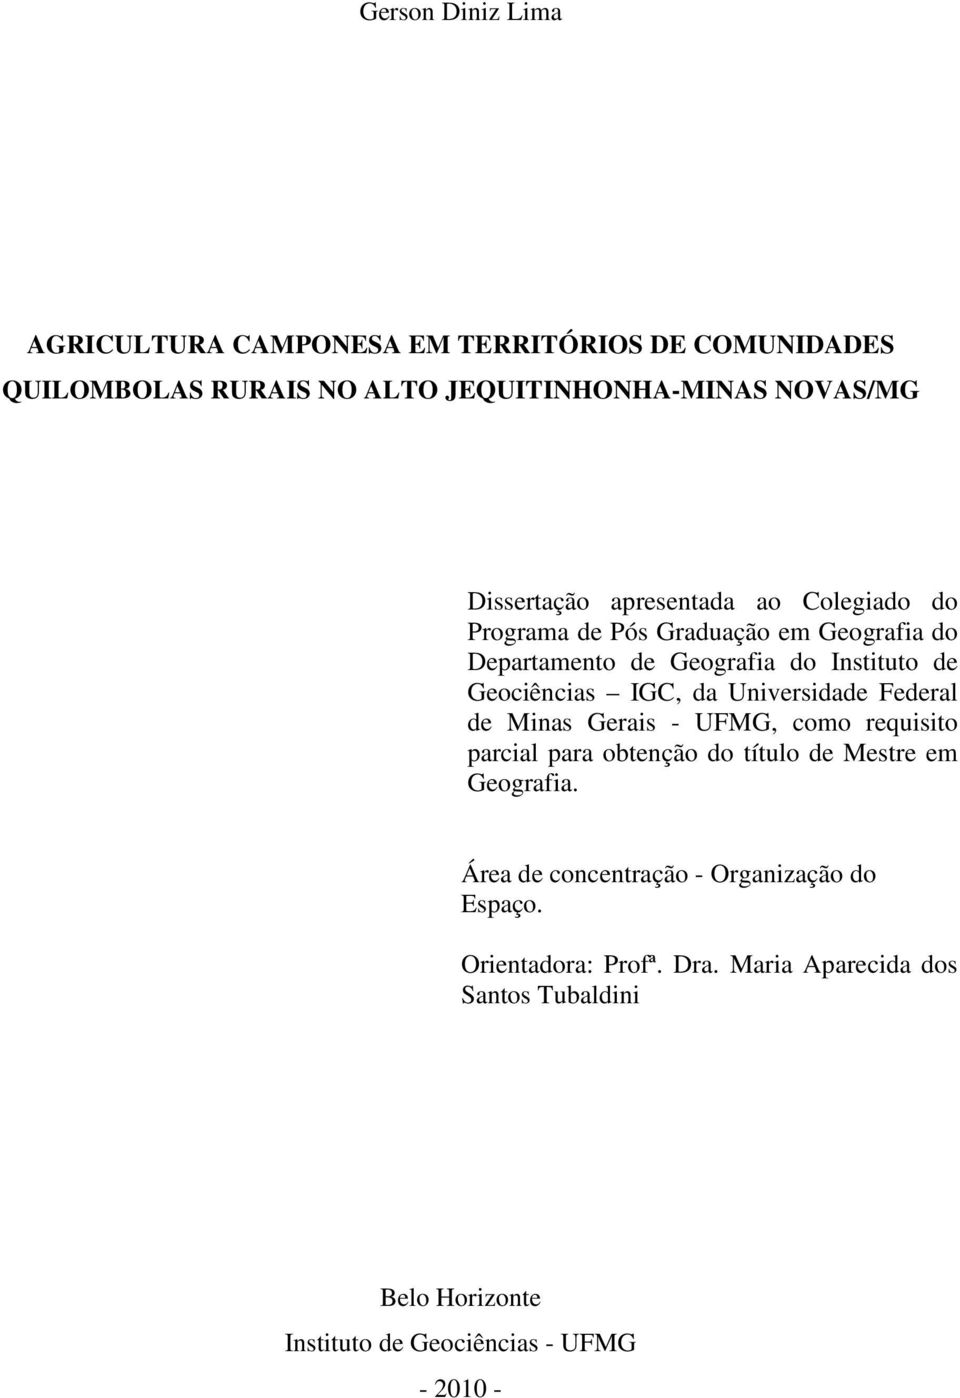 Universidade Federal de Minas Gerais - UFMG, como requisito parcial para obtenção do título de Mestre em Geografia.